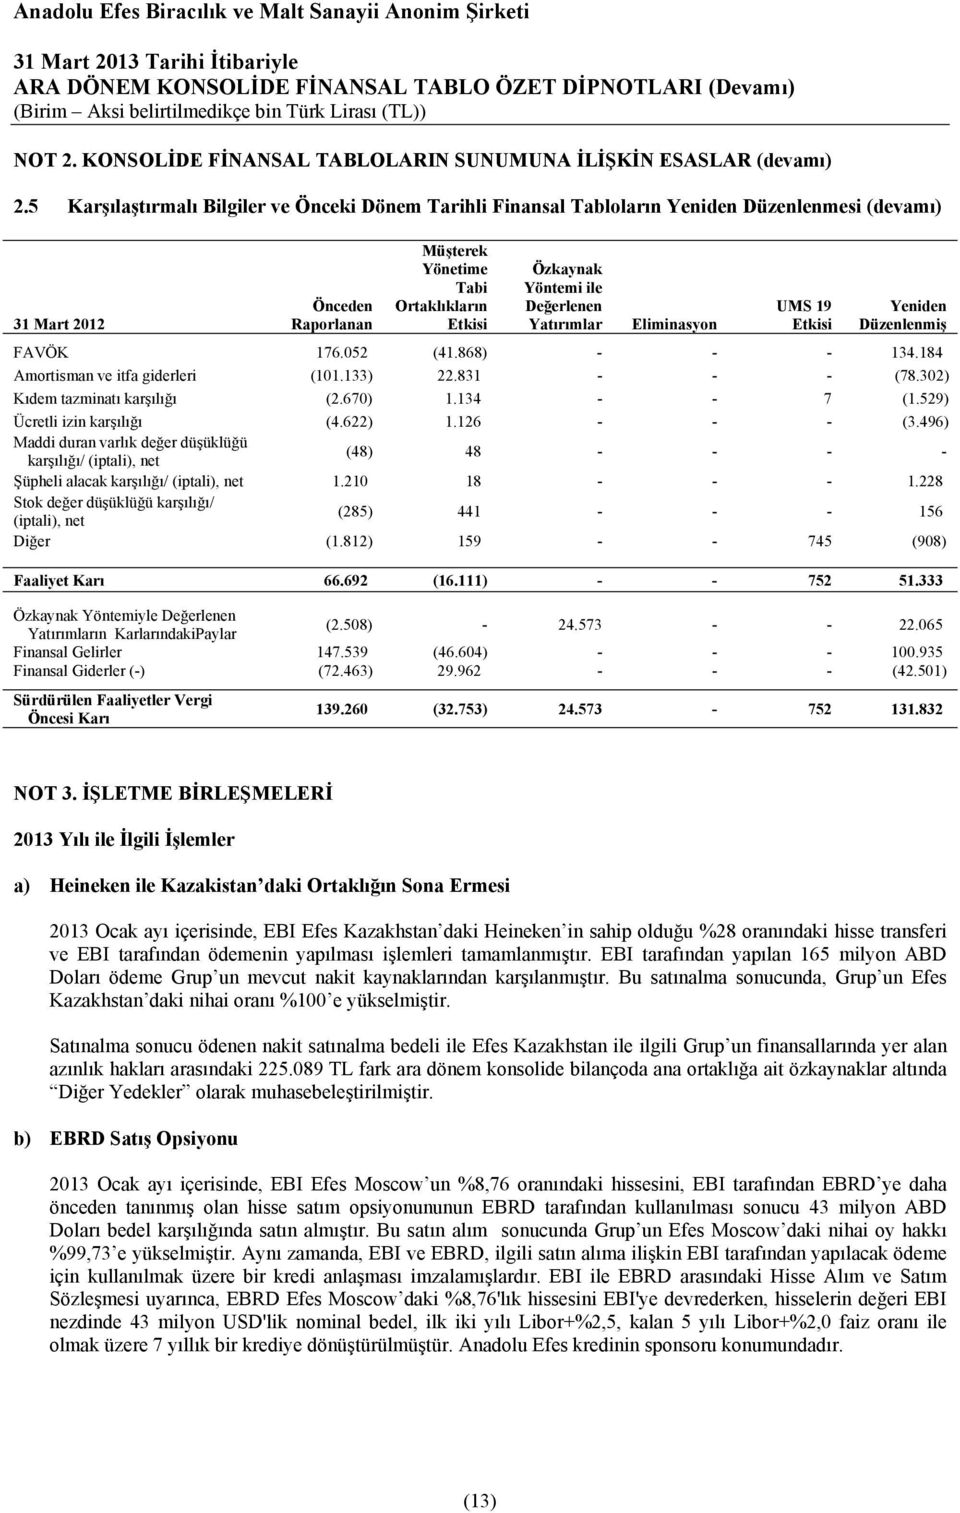 Değerlenen Yatırımlar Eliminasyon UMS 19 Etkisi Yeniden Düzenlenmiş FAVÖK 176.052 (41.868) - - - 134.184 Amortisman ve itfa giderleri (101.133) 22.831 - - - (78.302) Kıdem tazminatı karşılığı (2.